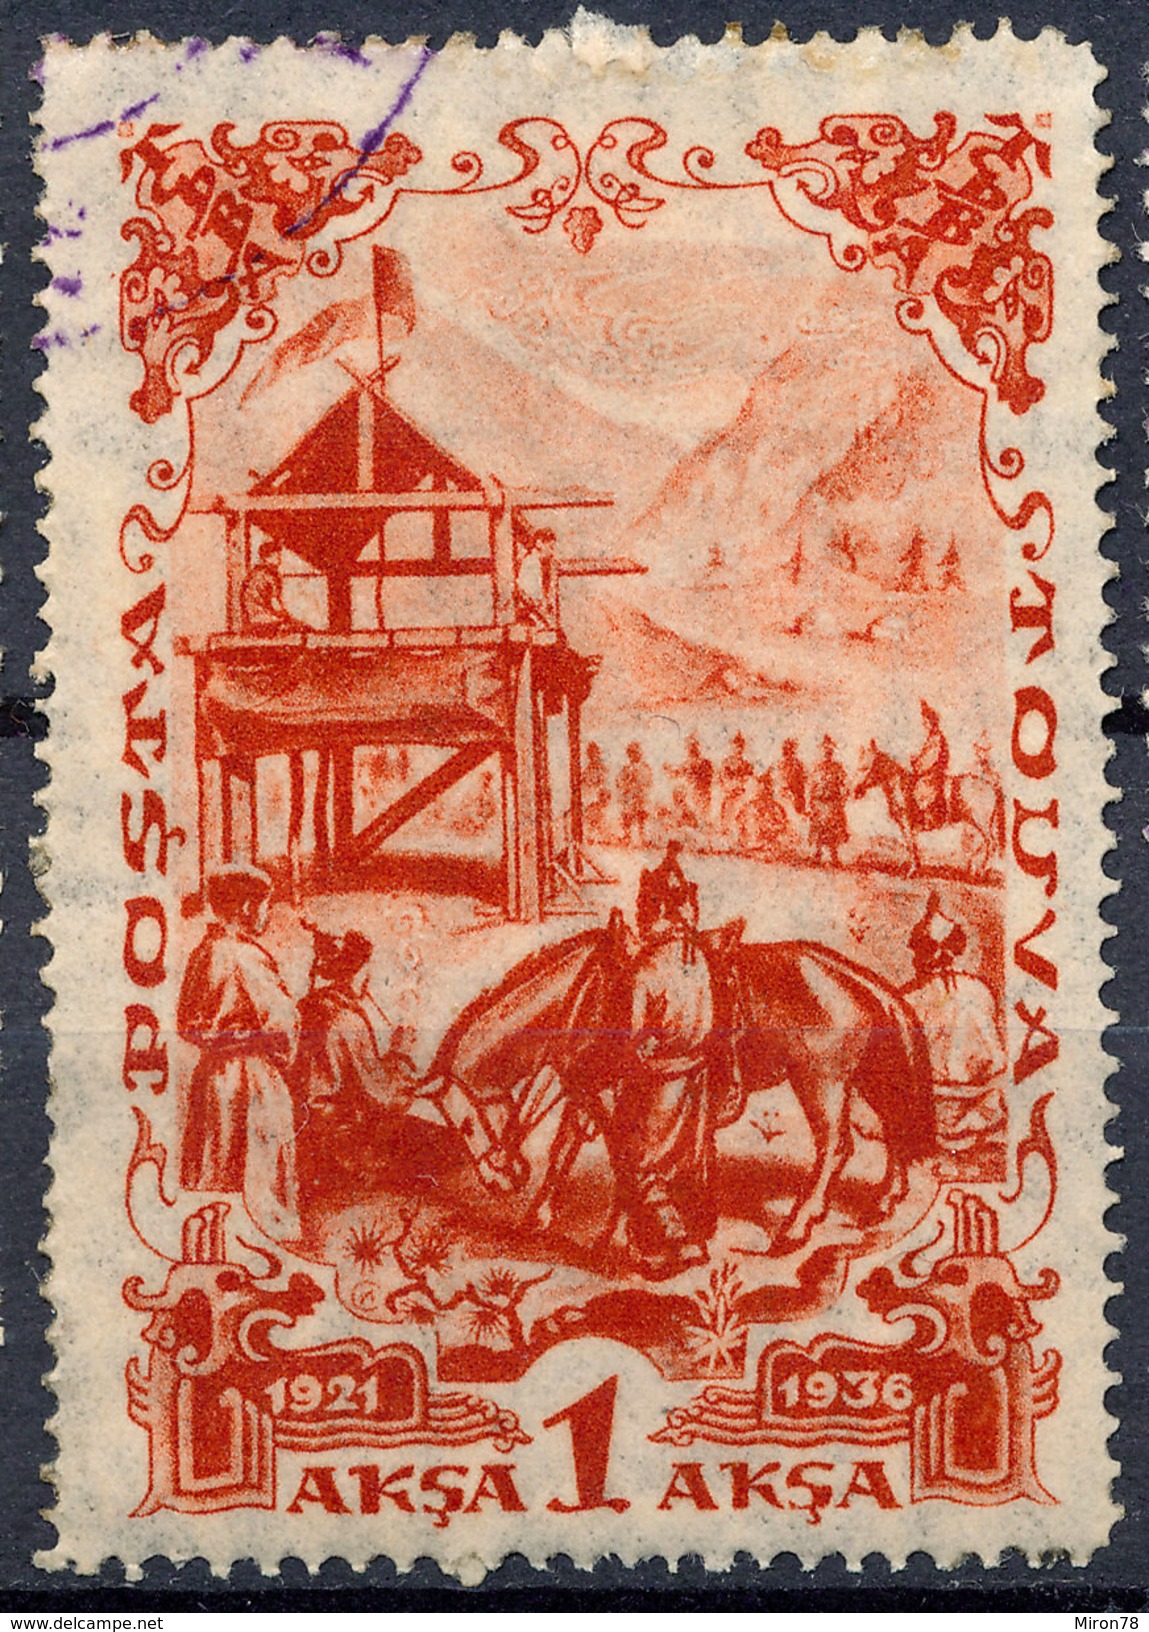 Stamp Tannu Tuva 1936 Used Lot#112 - Tuva